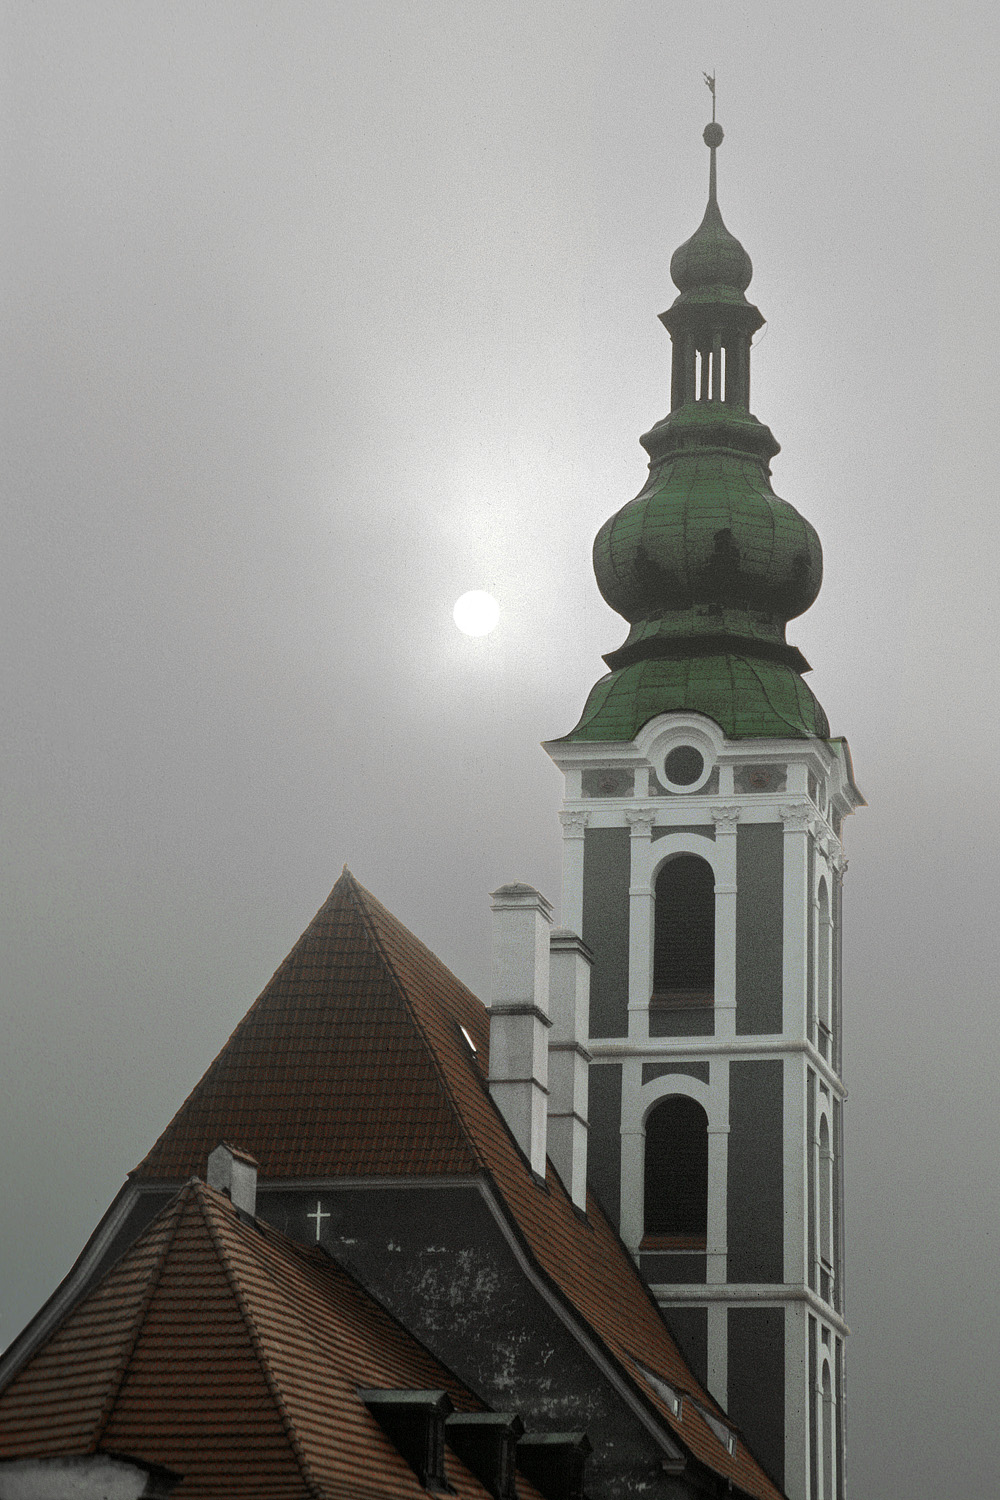 bill-hocker-st-jost-church-cesky-krumlov-czech-republic-2005